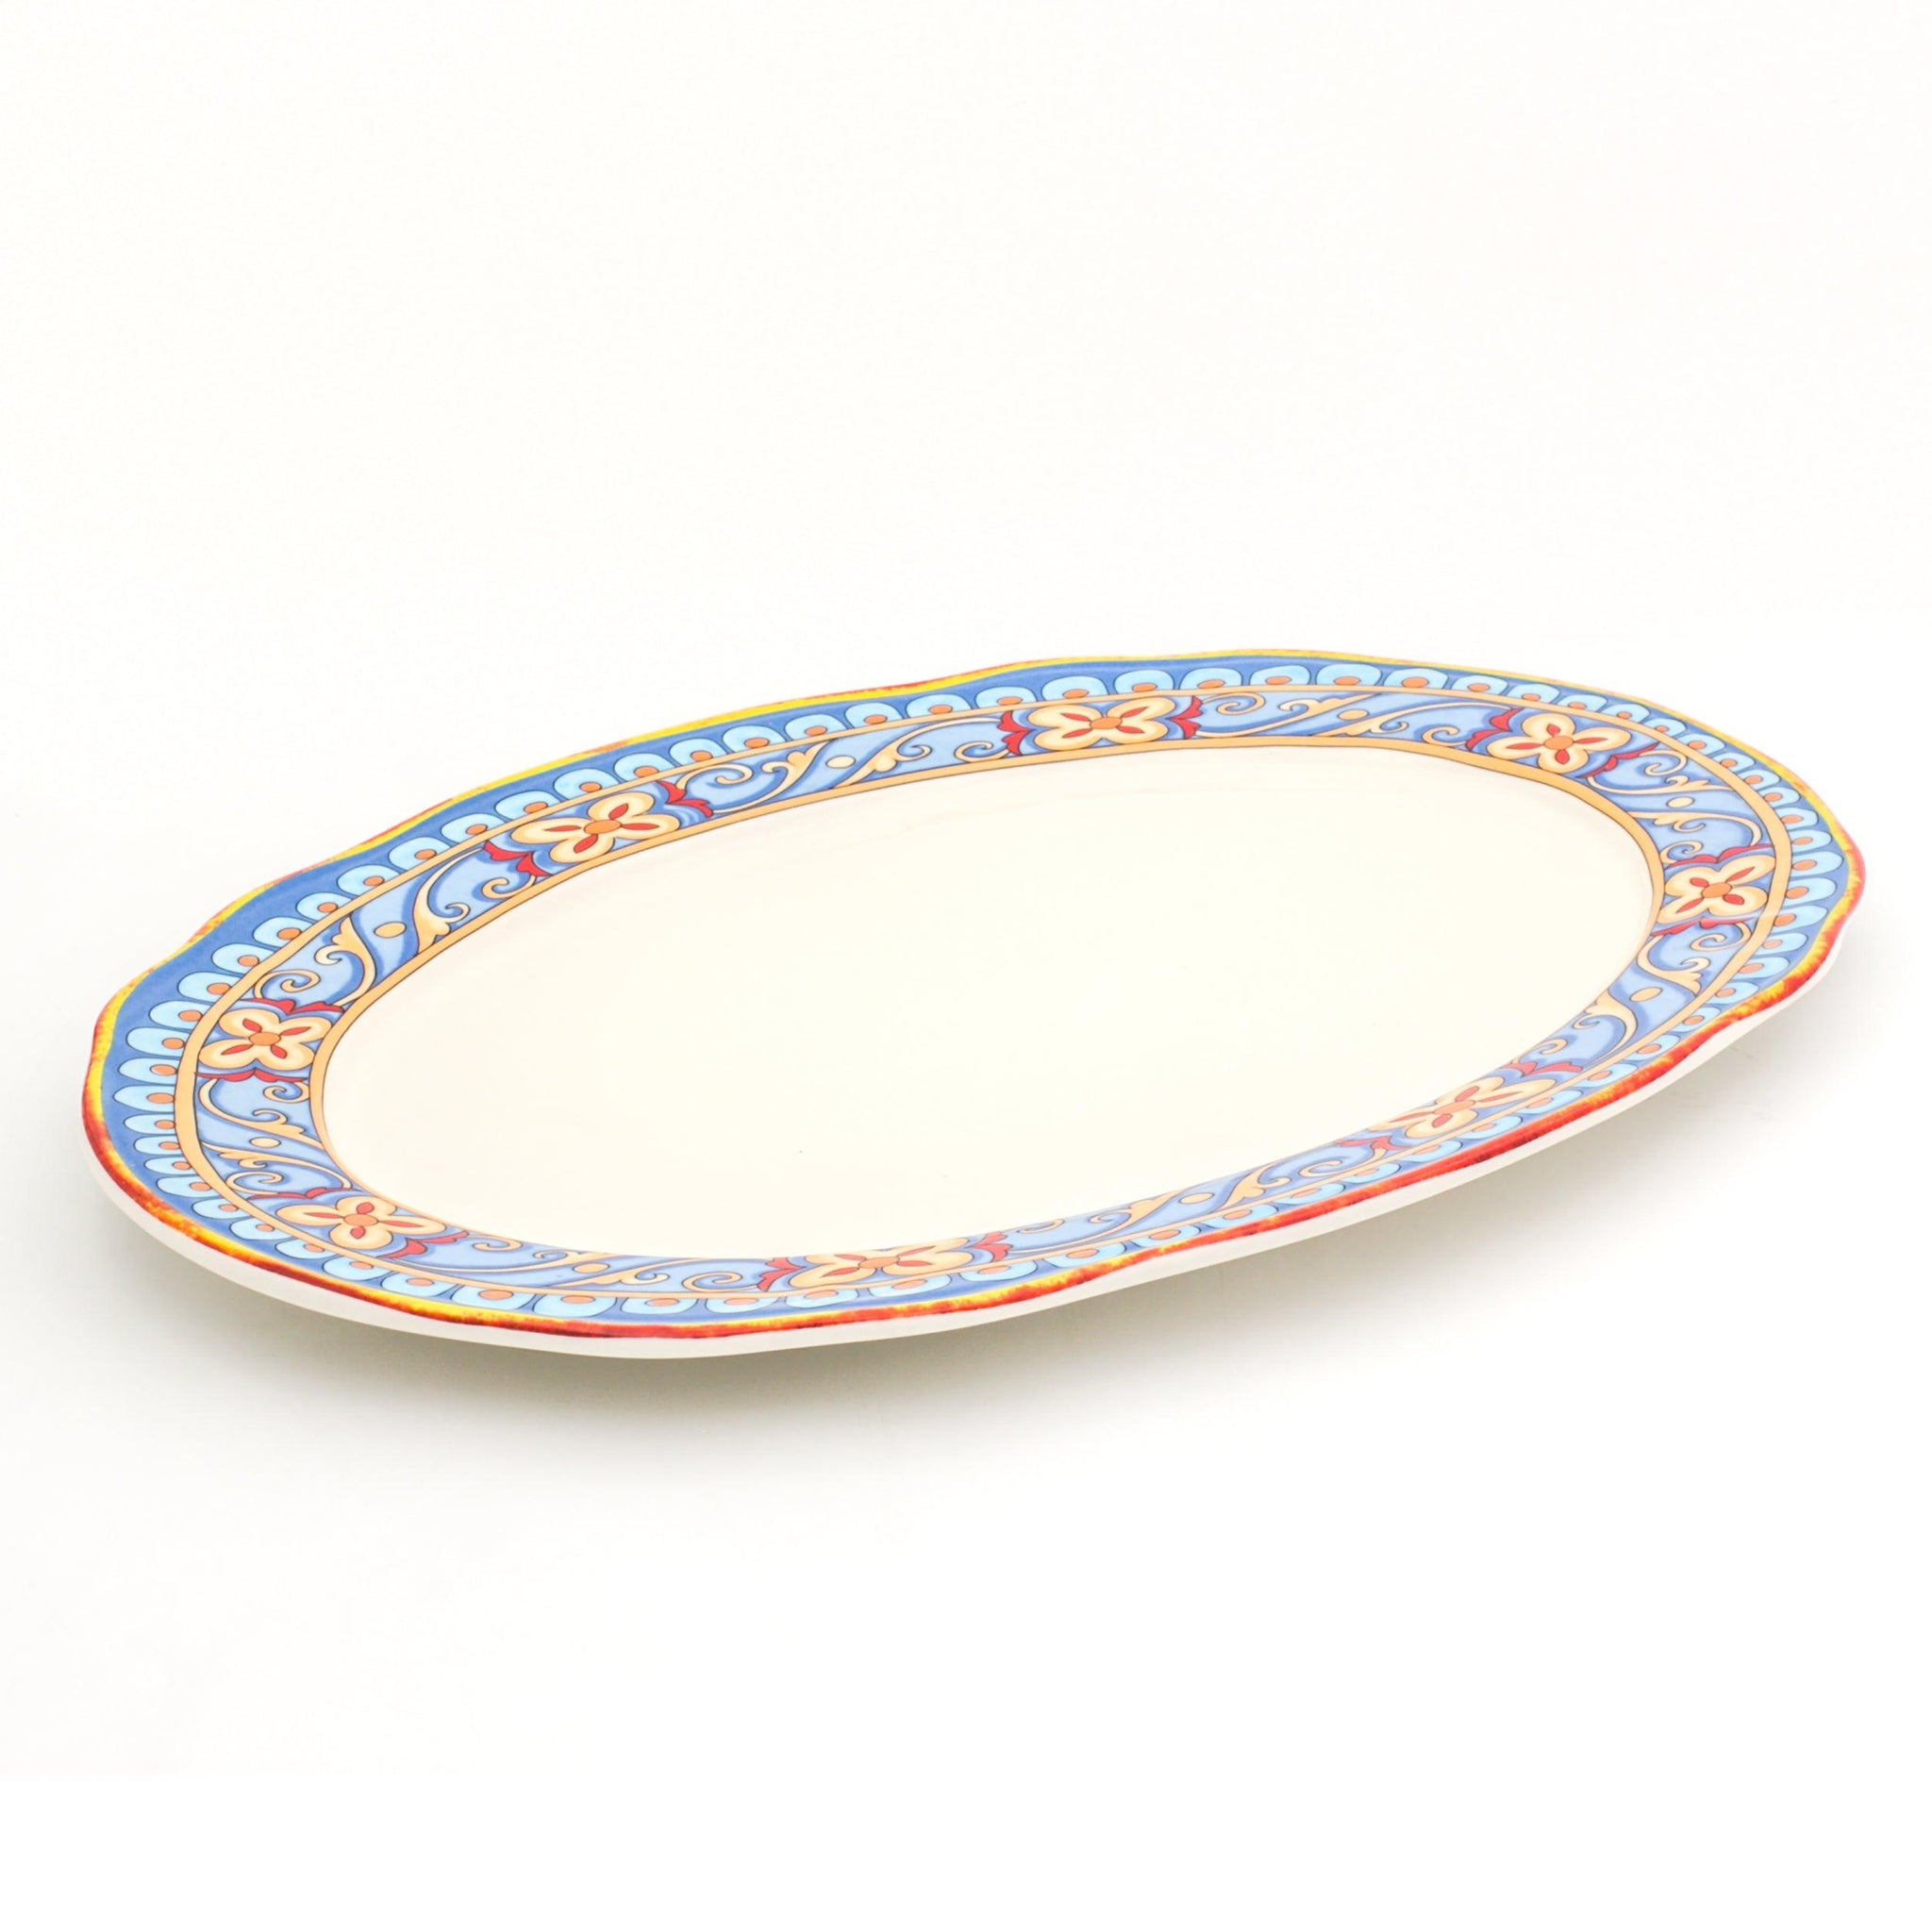 Duomo Oval Platter - Euro Ceramica 